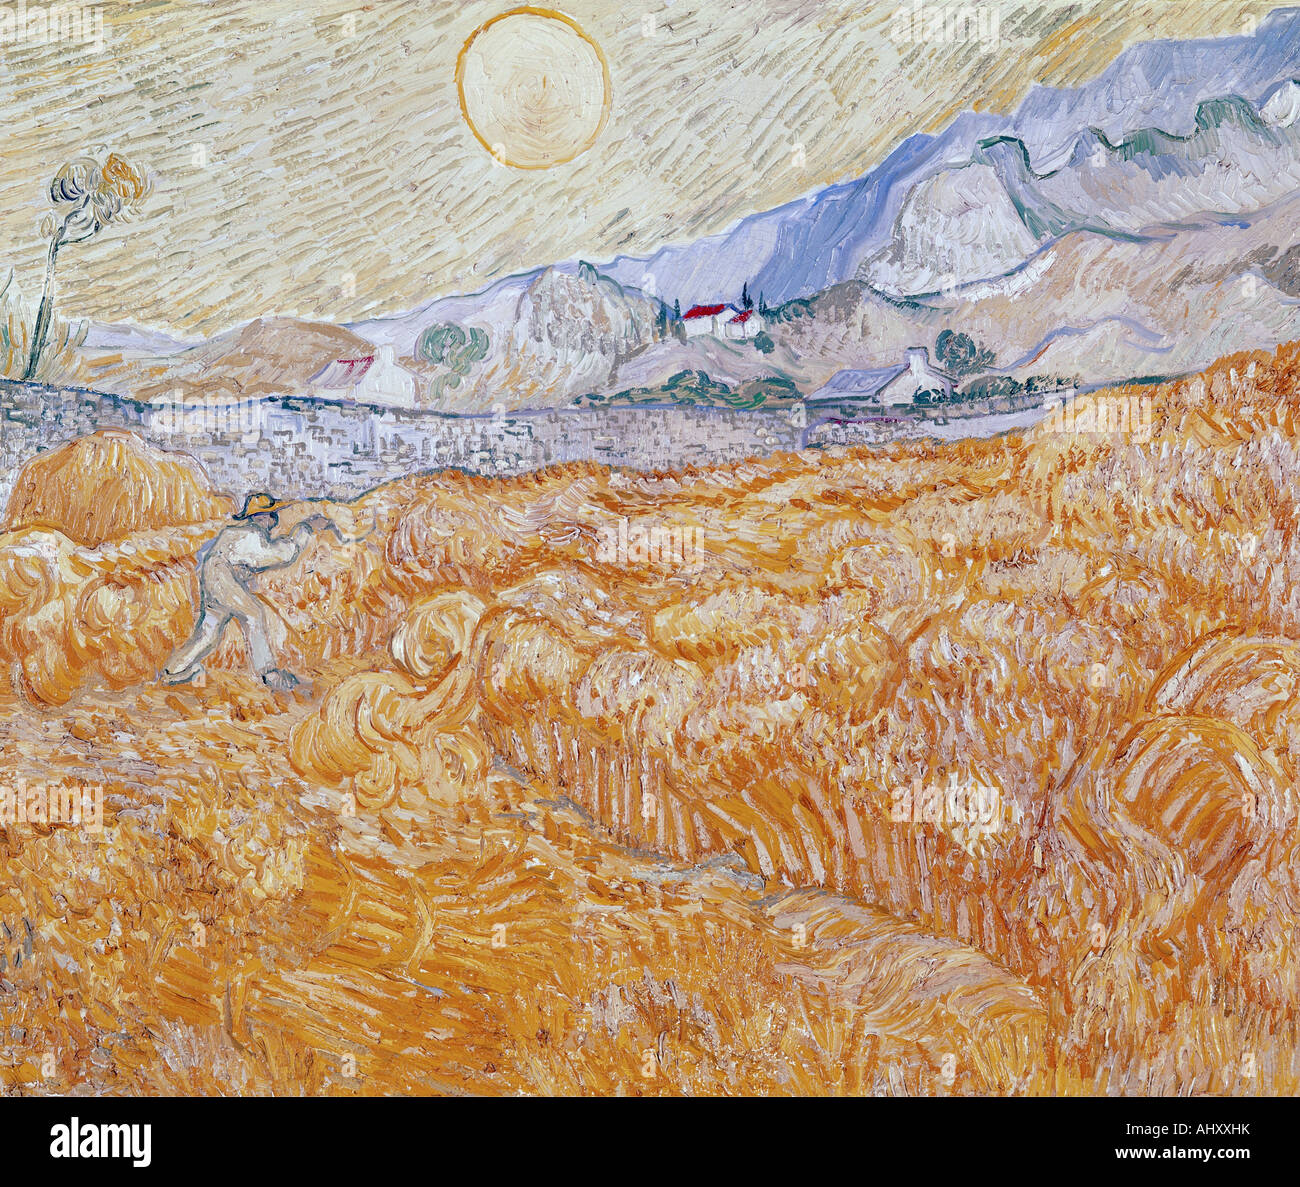 'Fine Arts, Vincent van Gogh, (1853 - 1890), peinture, 'La moisson', 1889, Folkwang museum, Essen, historique, historique, Eur Banque D'Images